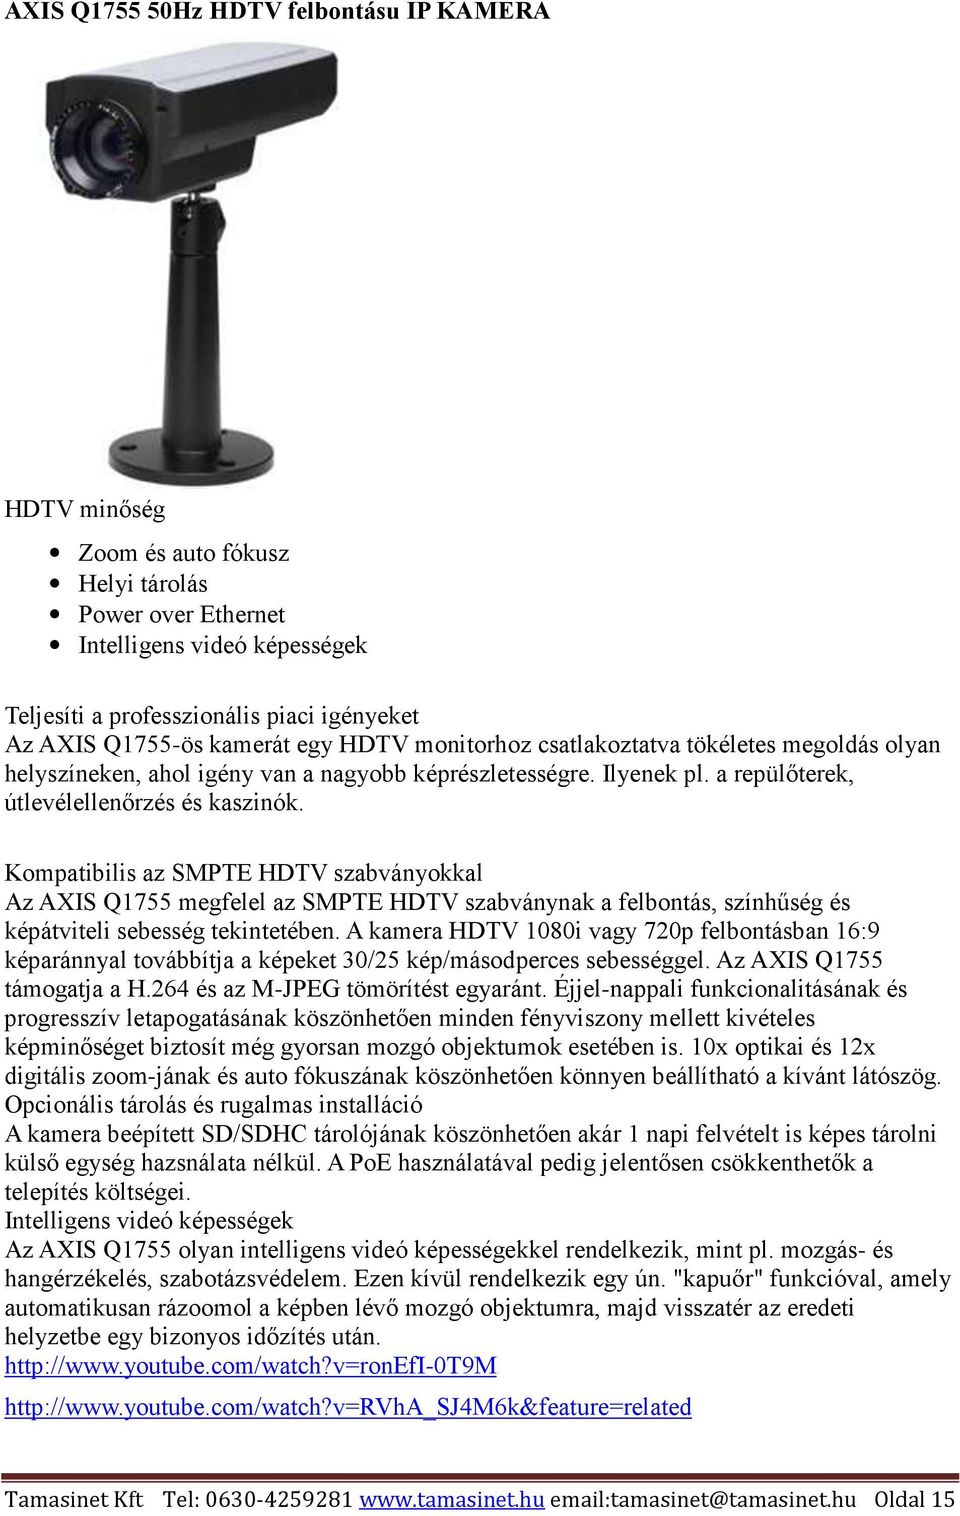 Kompatibilis az SMPTE HDTV szabványokkal Az AXIS Q1755 megfelel az SMPTE HDTV szabványnak a felbontás, színhűség és képátviteli sebesség tekintetében.